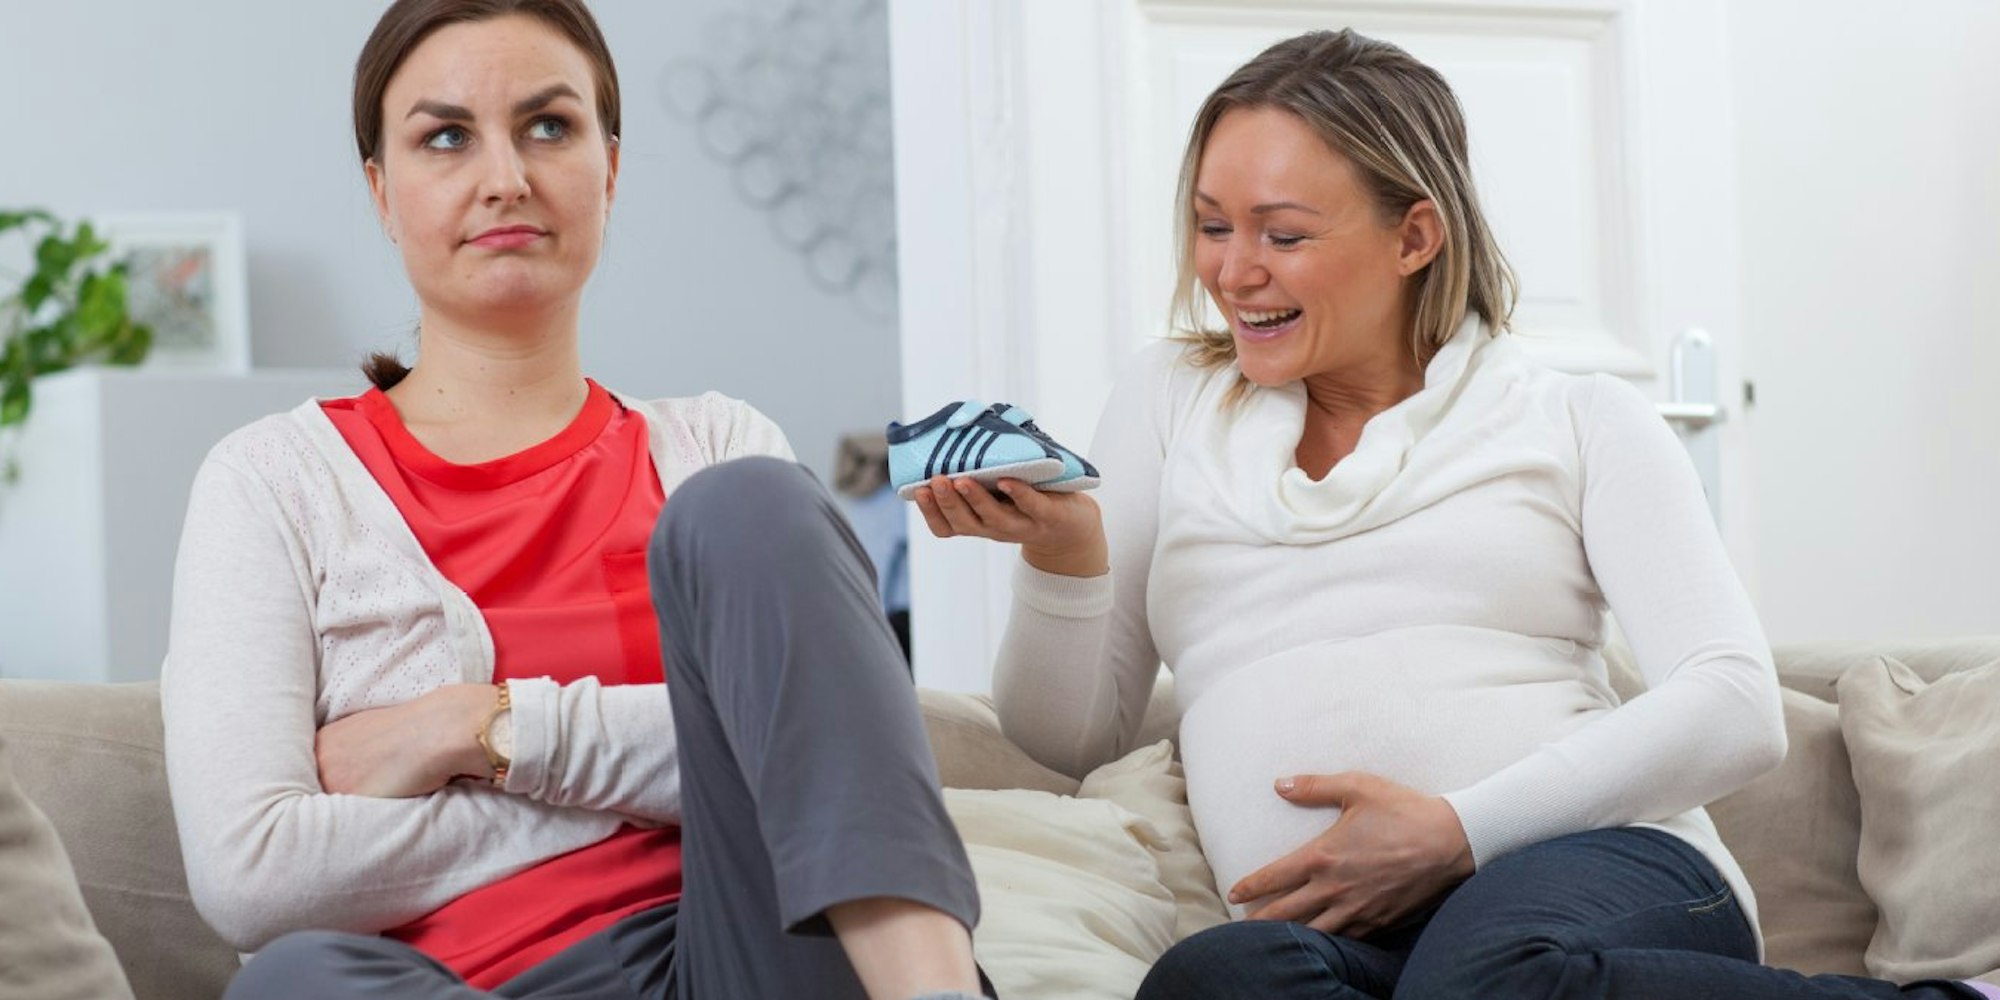 Wenn Ereignisse wie eine Schwangerschaft das Leben verändern, entwickeln sich manchmal auch sehr enge Freundschaften auseinander.